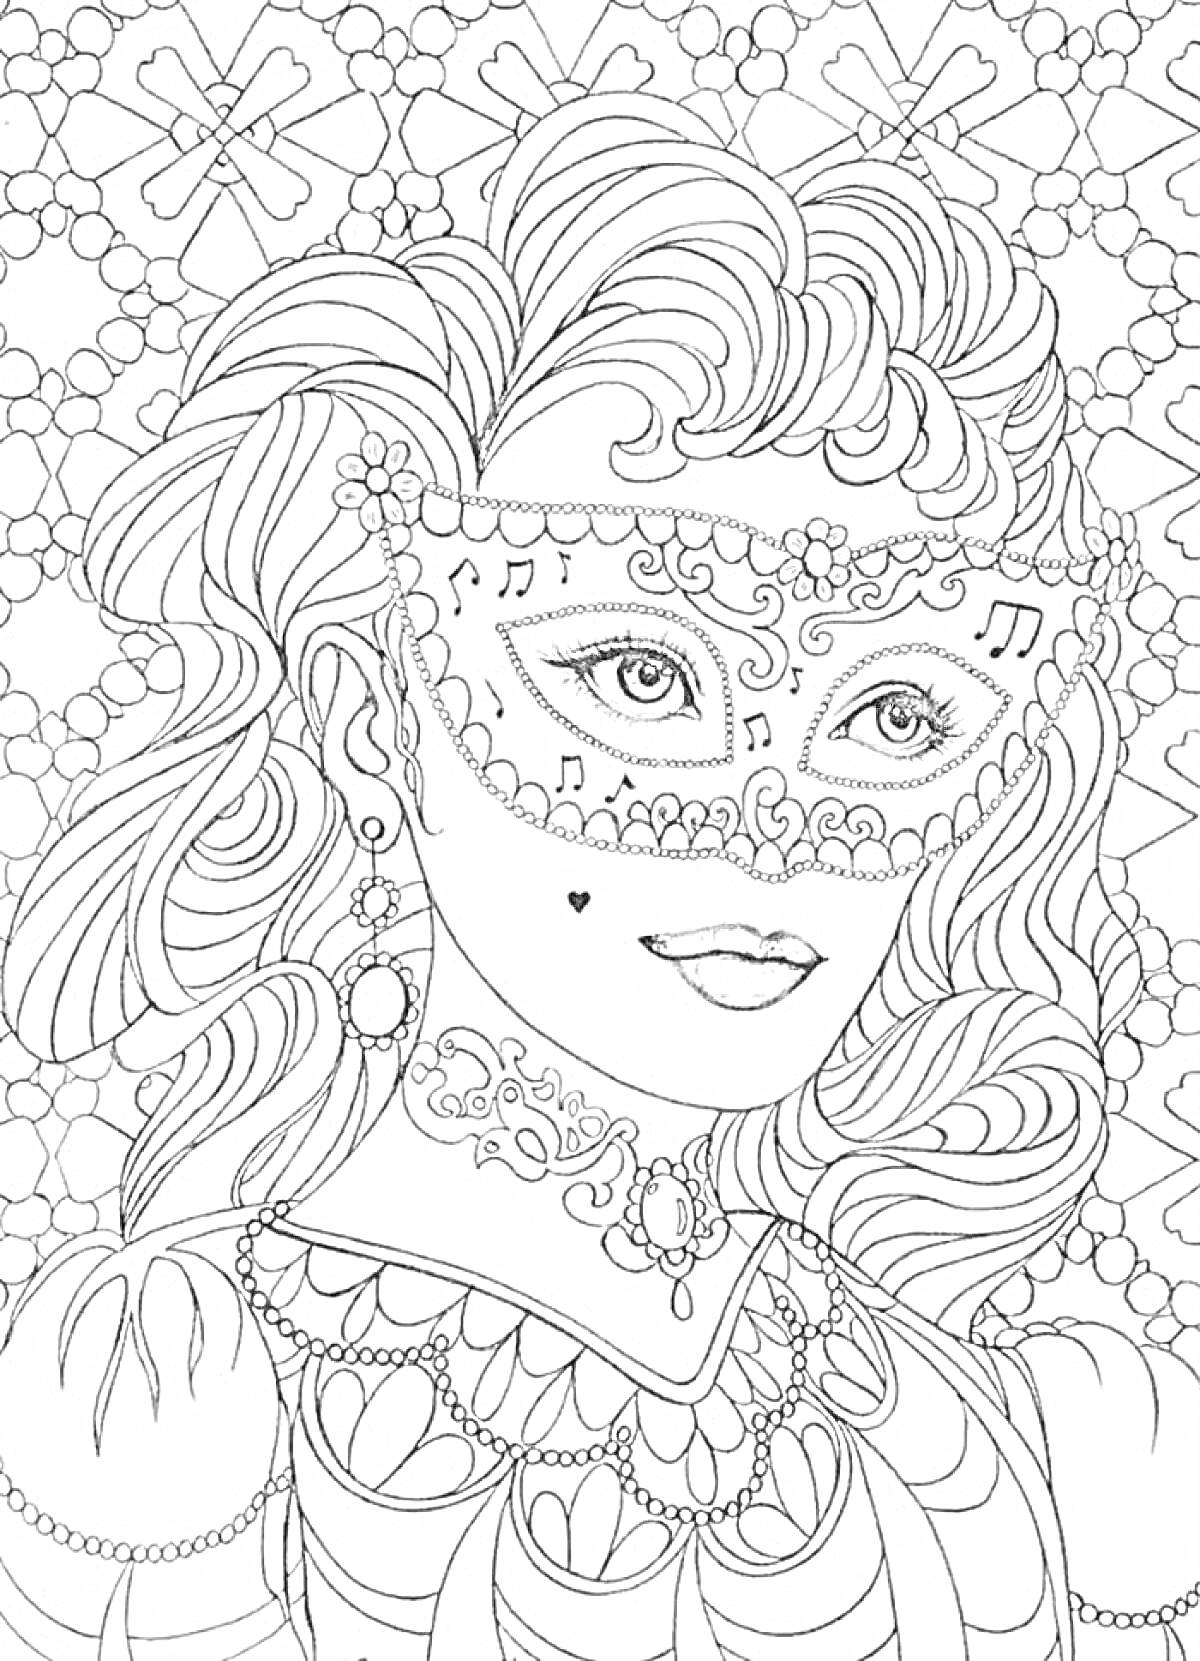 Девушка в маске с музыкальными нотами, пышными волосами и богатыми украшениями на фоне узоров